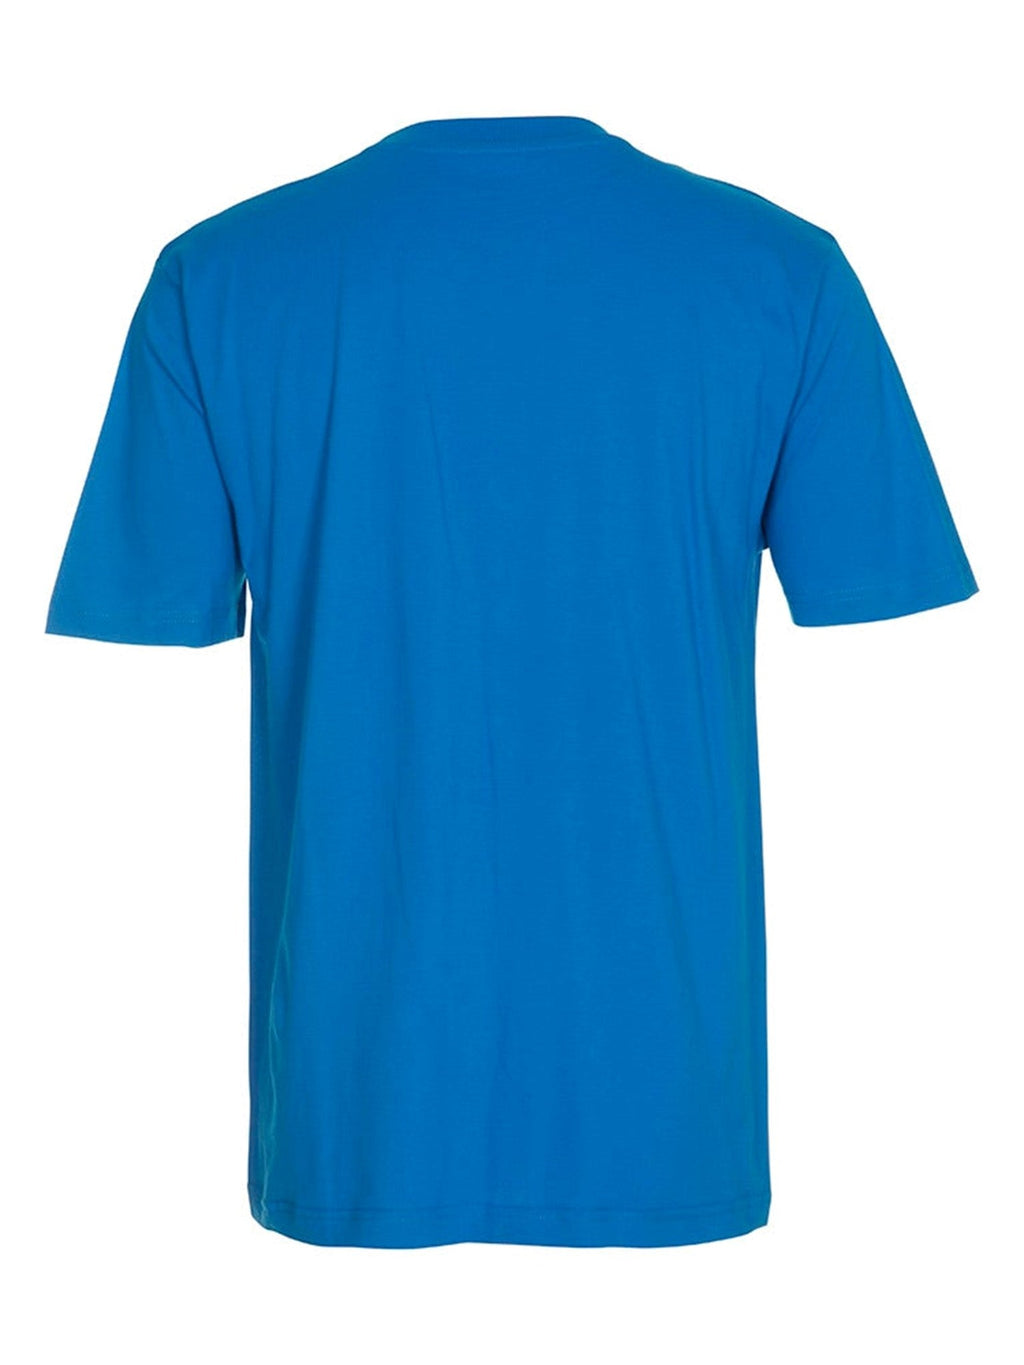 Negabaritiniai marškinėliai - mėlyni